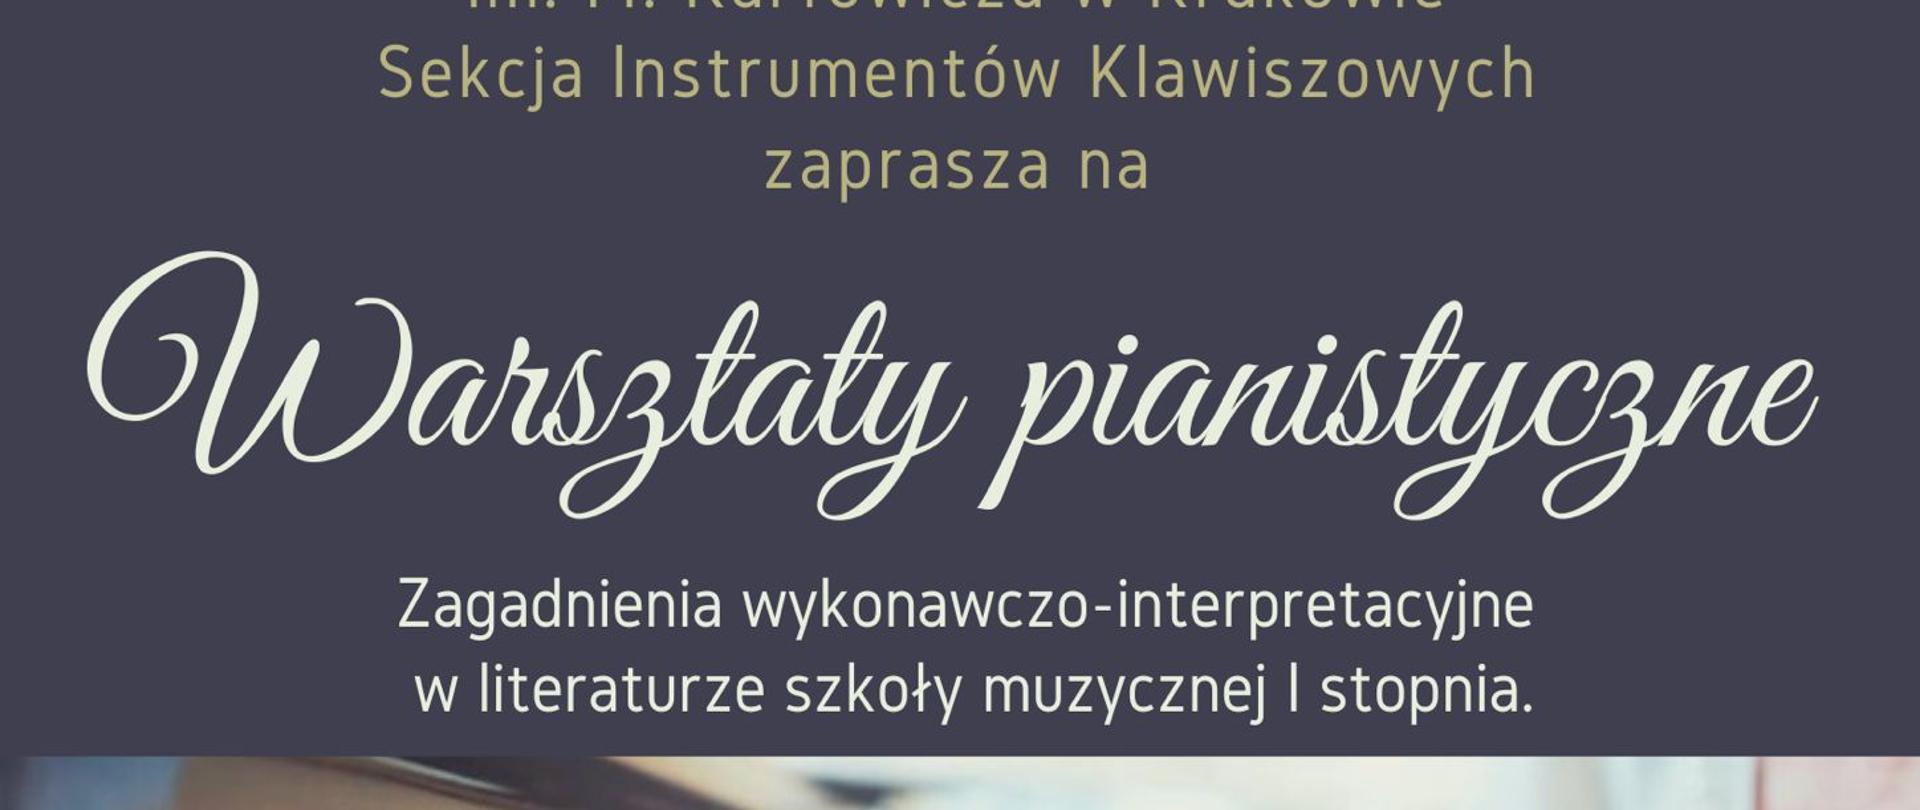 Plakat informujący o warsztatach pianistycznych prowadzonych przez Annę Szajer, odbywających się w szkole 28 kwietnia 2023 o godzinie 10:00 w sali B103.